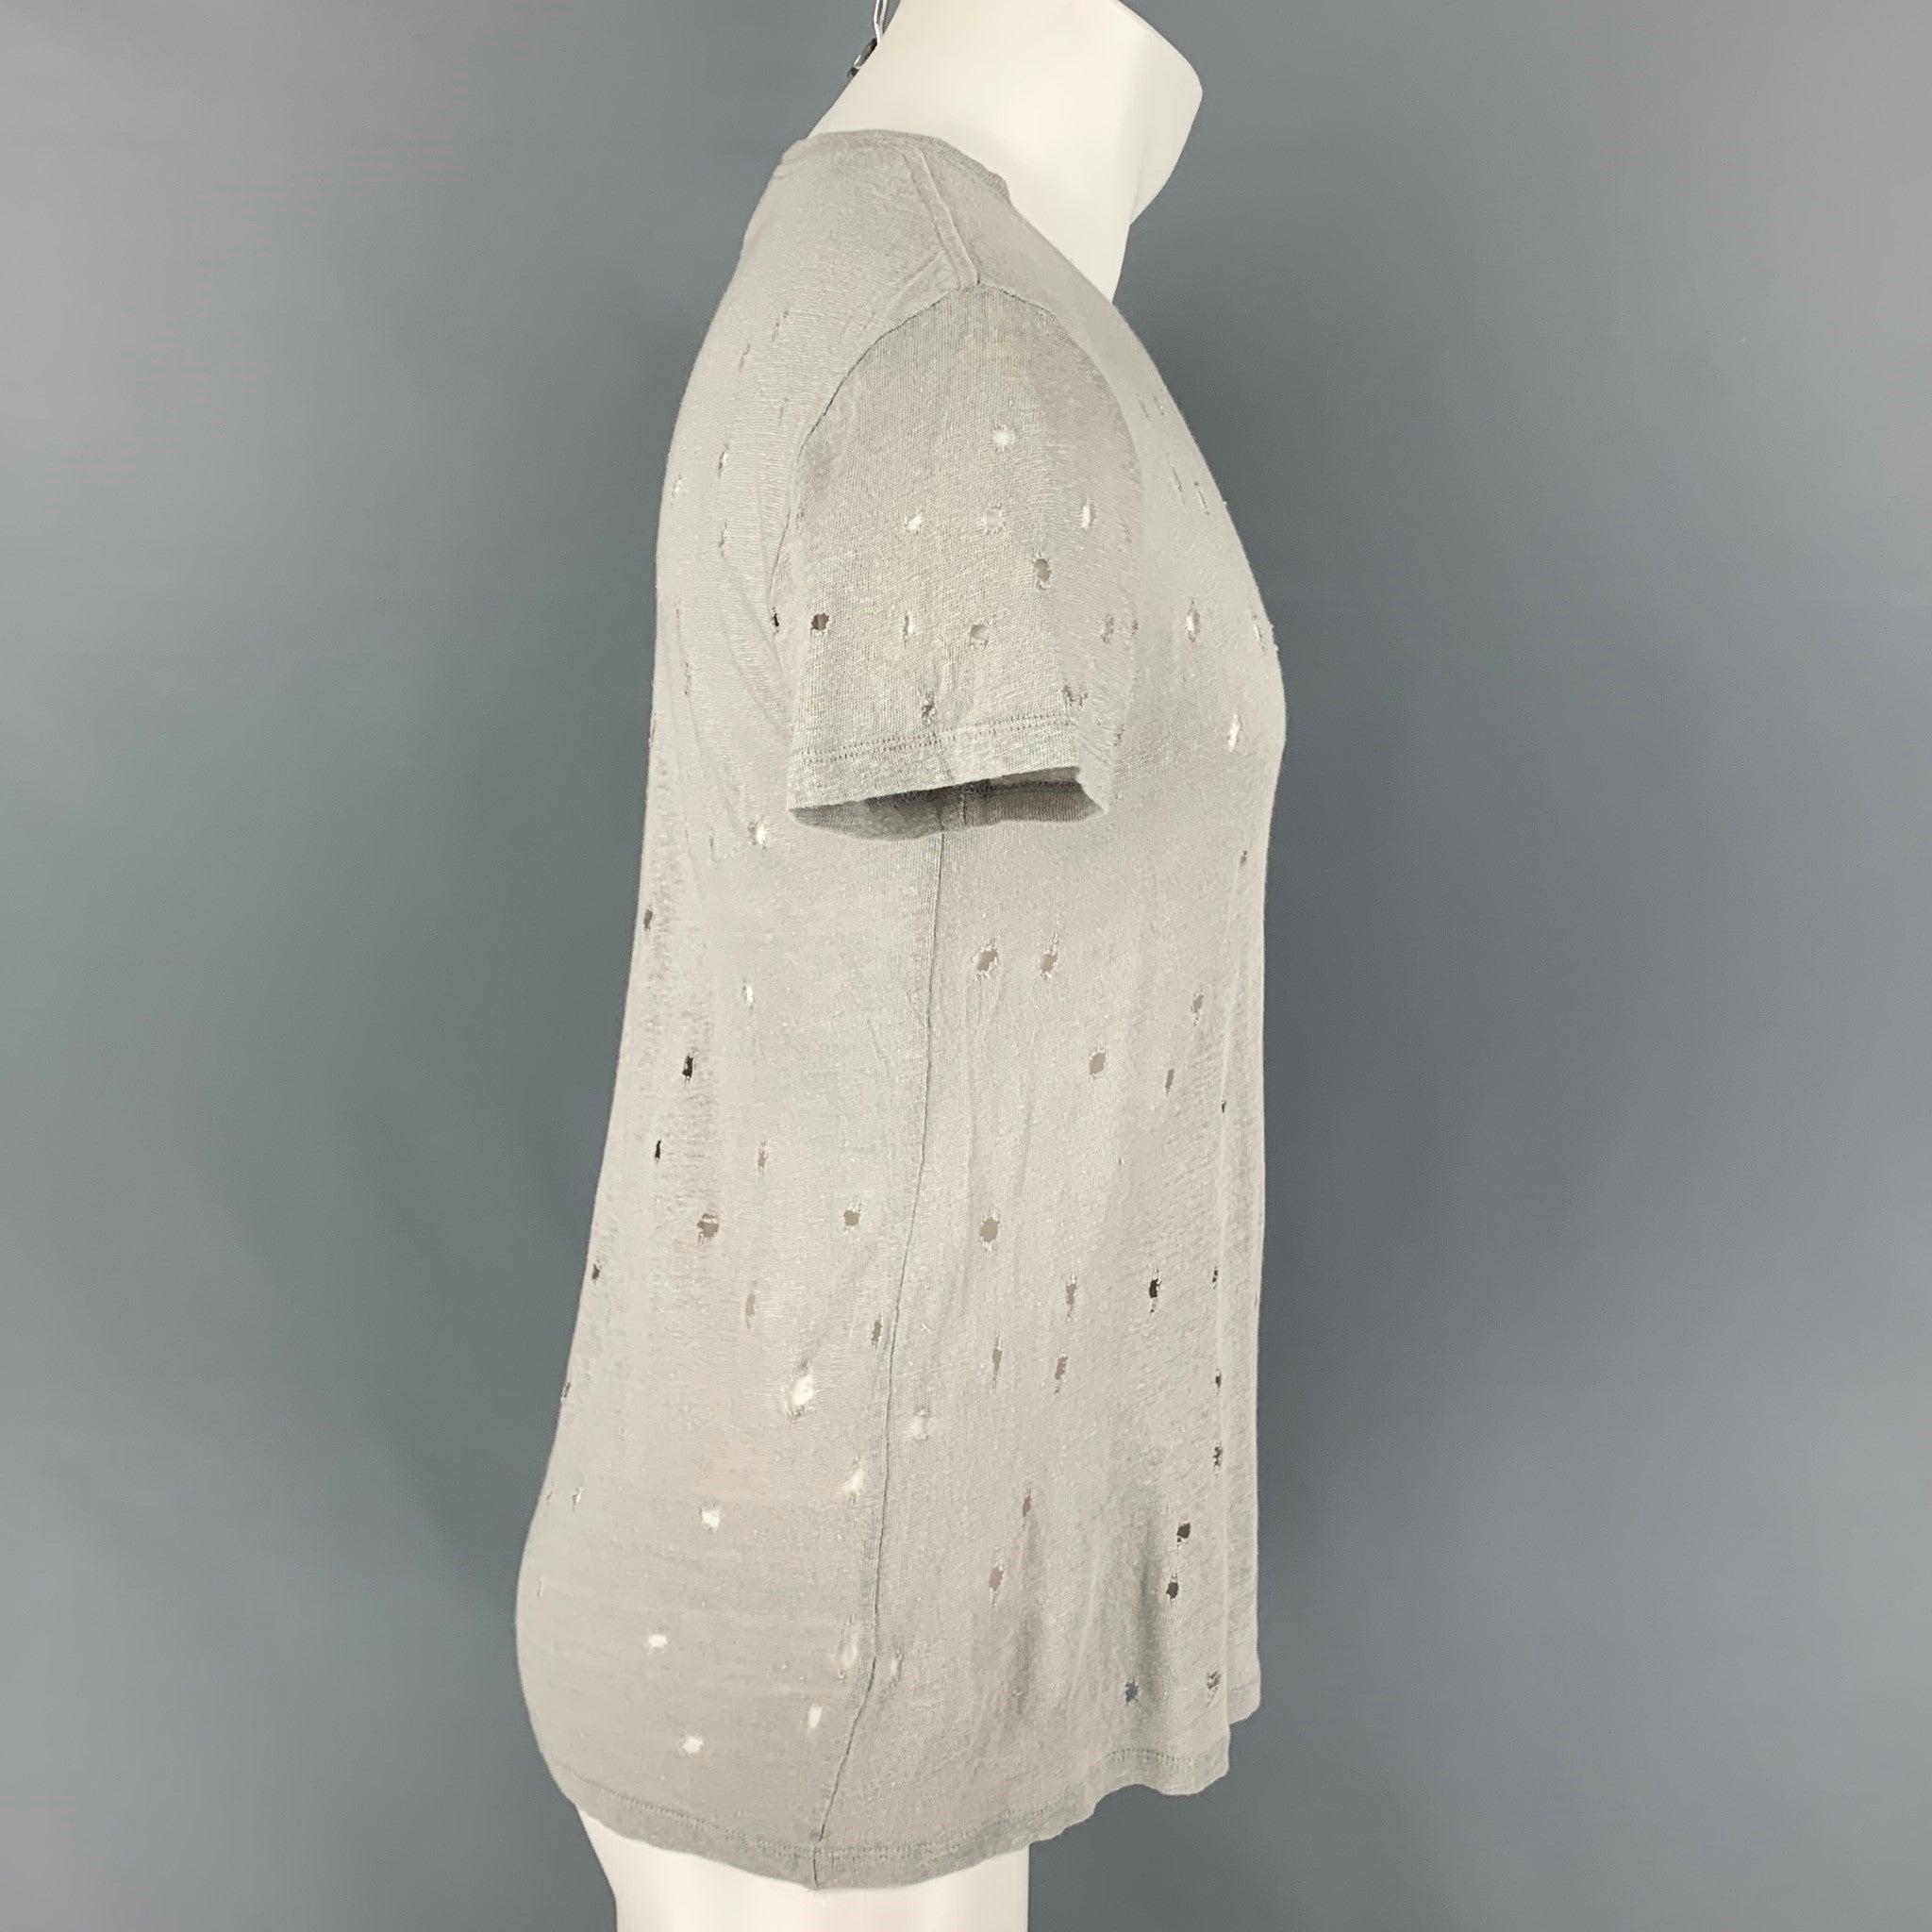 Le t-shirt 'Clay' d'Iro se présente dans un lin gris clair avec des détails en relief et une encolure ras du cou. Fabriqué au Portugal.
Très bon état d'origine.  

Marqué :   S 

Mesures : 
 
Épaule : 18 pouces  Poitrine : 38 pouces  Manches : 8